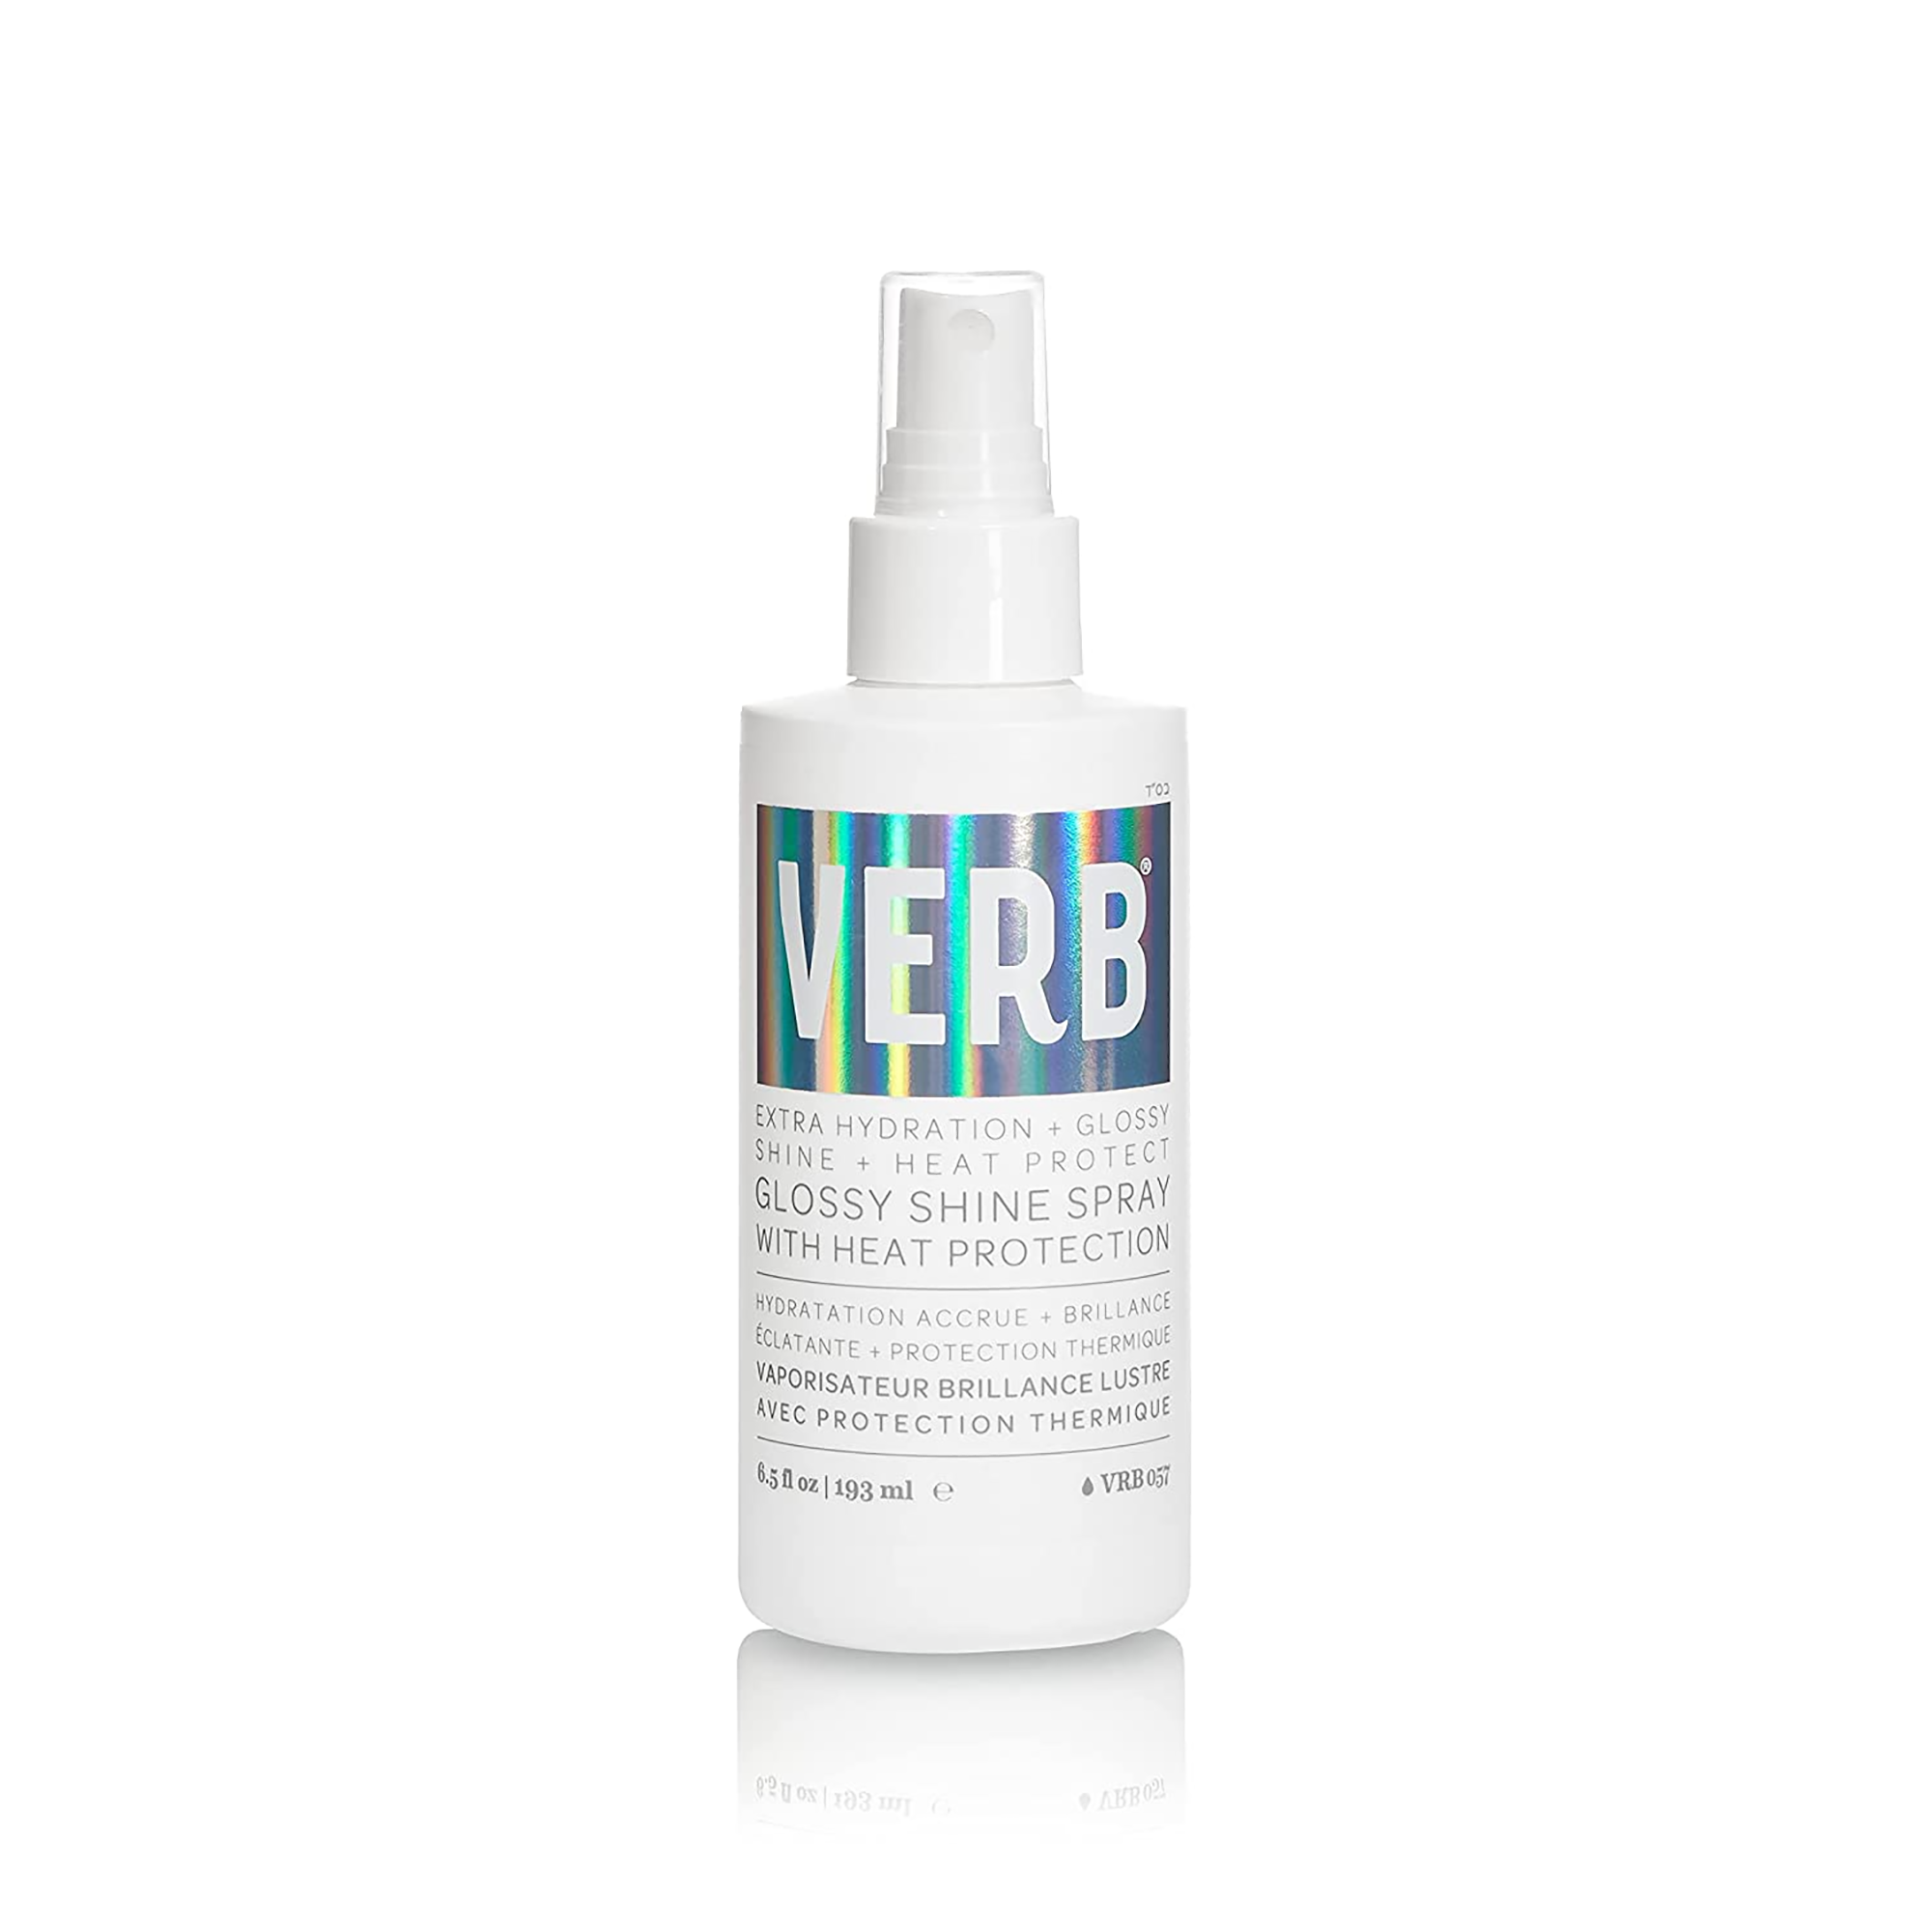 Verb Glossy Shine Spray - 6.5oz / 6.5OZ